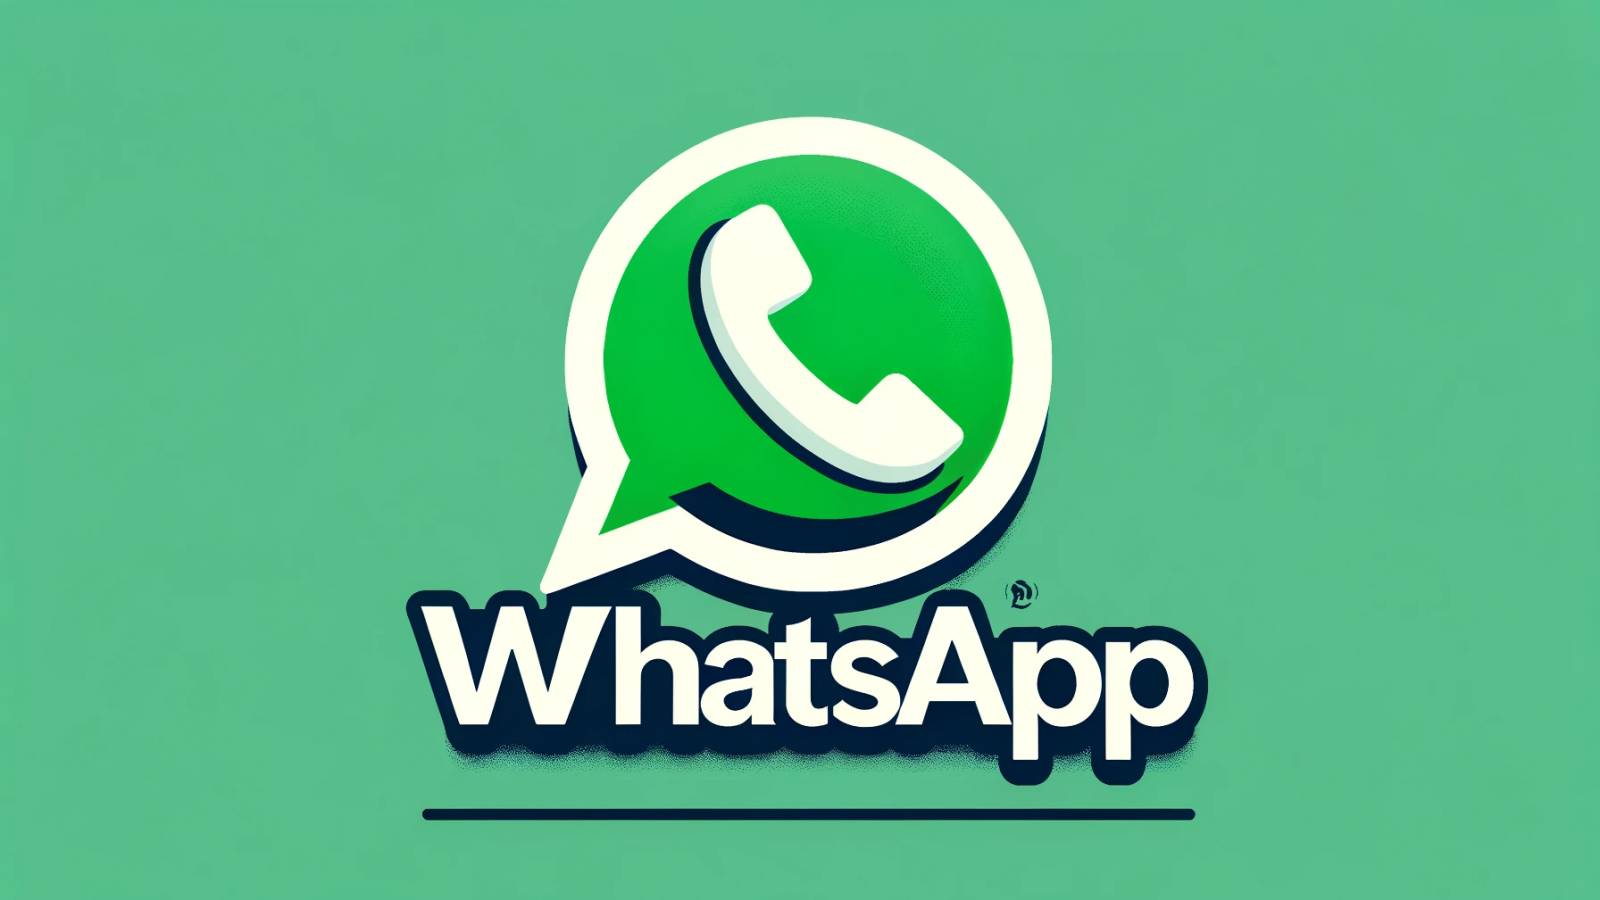 WhatsApp 4 GROSSE Tricks Wenig bekannte iPhone Android